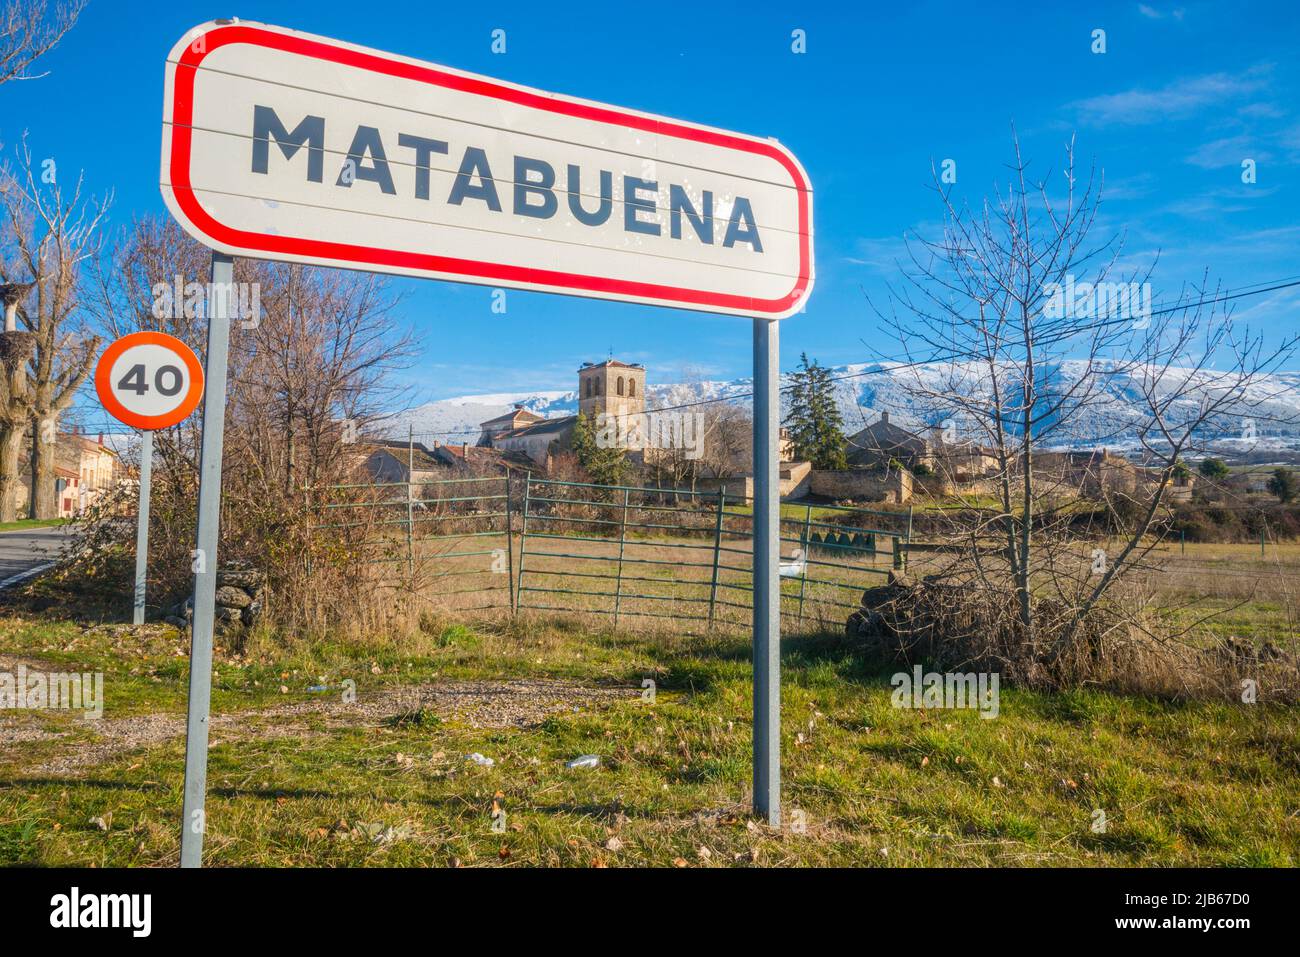 Overview. Matabuena, Segovia province, Castilla Leon, Spain. Stock Photo